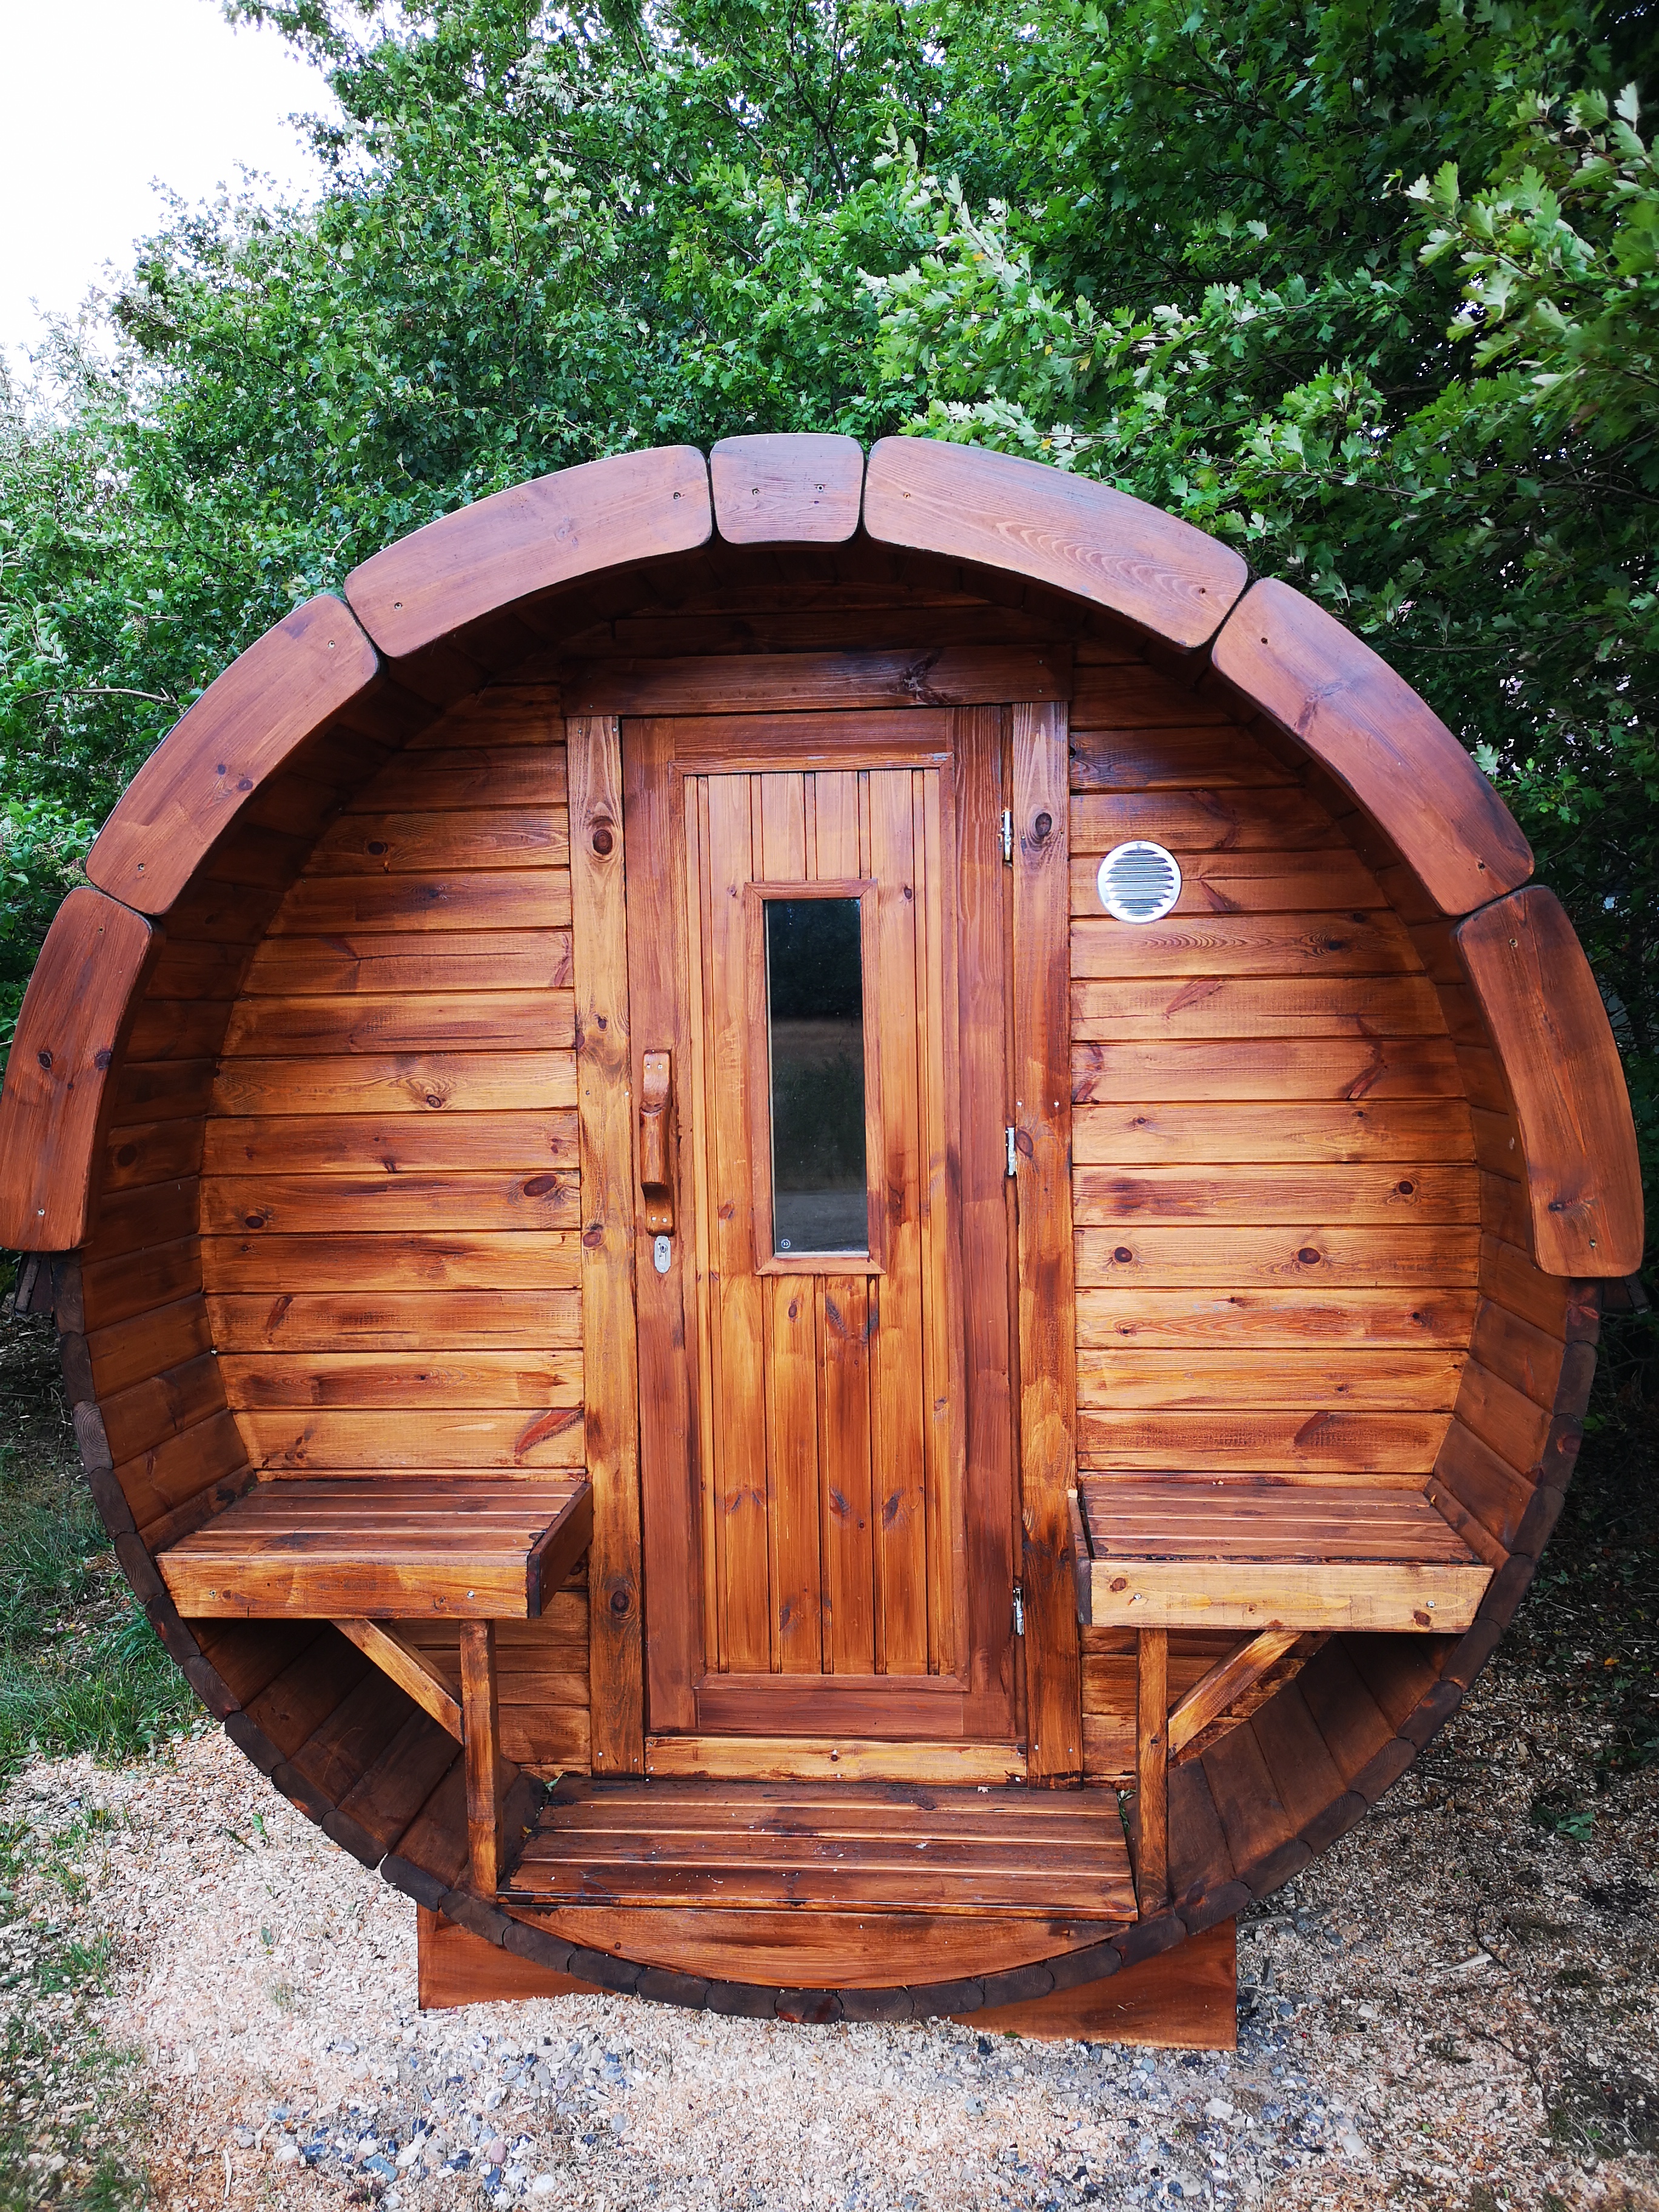 Komfort i skøn natur - bål hytte og udendørs sauna - Lejligheder til leje i  Dybvad, Danmark